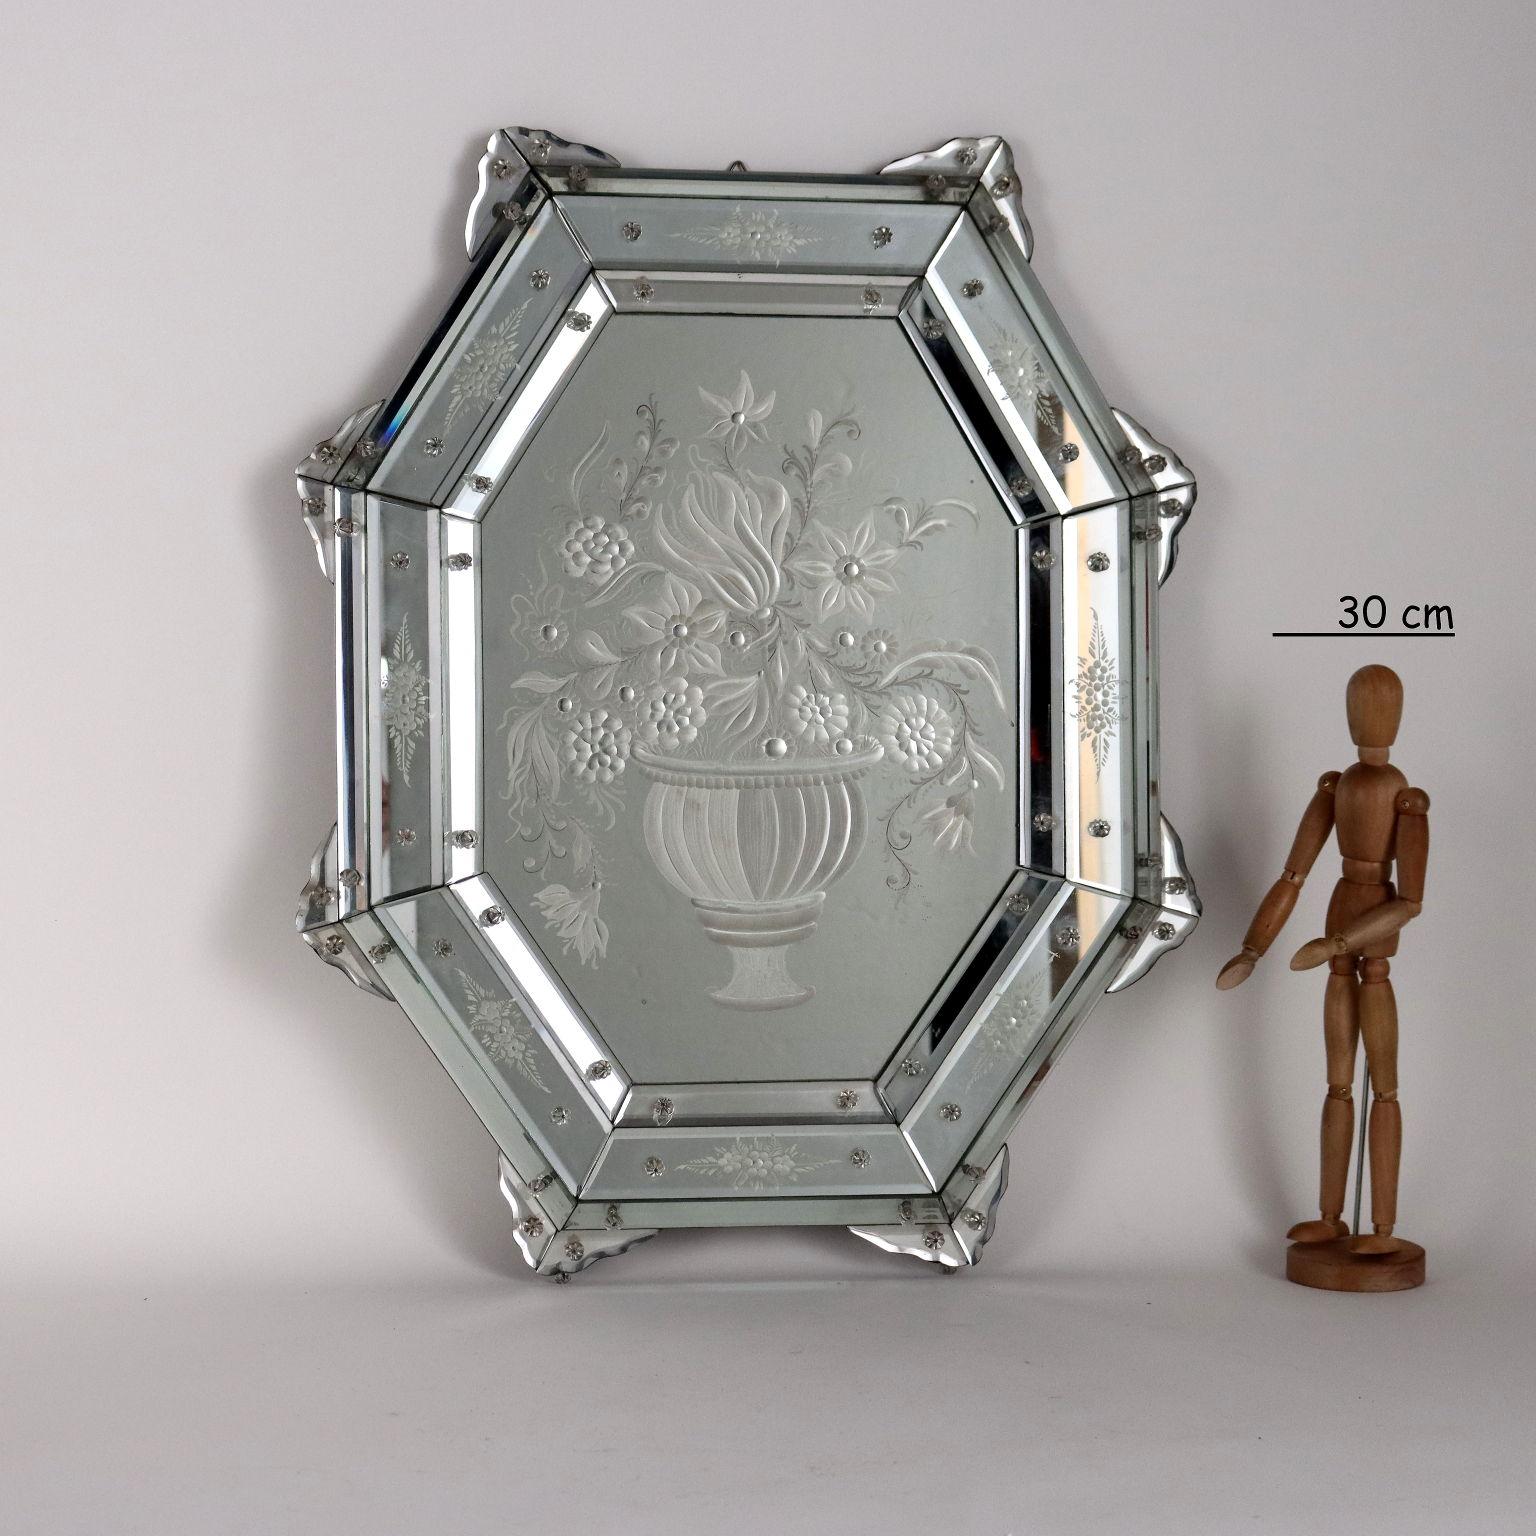 Le miroir central est gravé pour former un vase représentant un vase avec des fleurs qui fait écho aux cadres en verre gravé et biseauté représentant des motifs floraux.
Italie début du 20e siècle